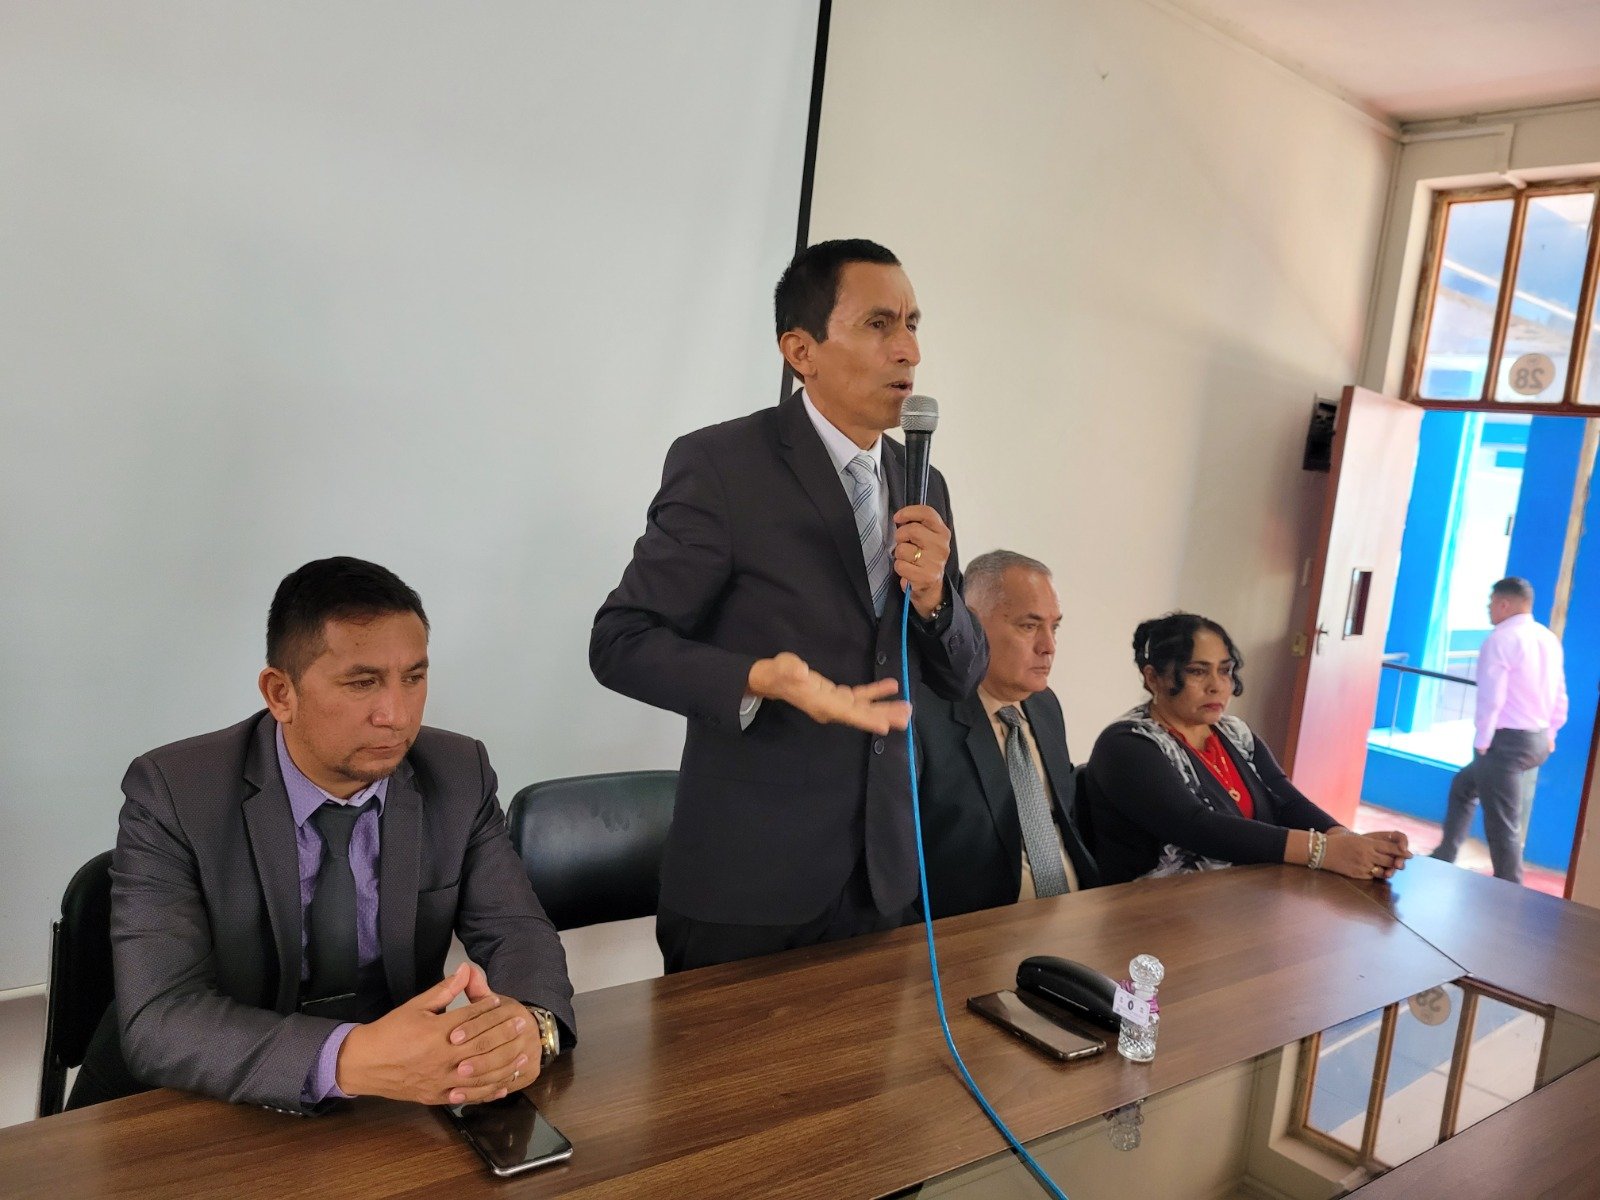 Nuevo titular de la DRE Huánuco se declara inocente ante imputaciones en su contra